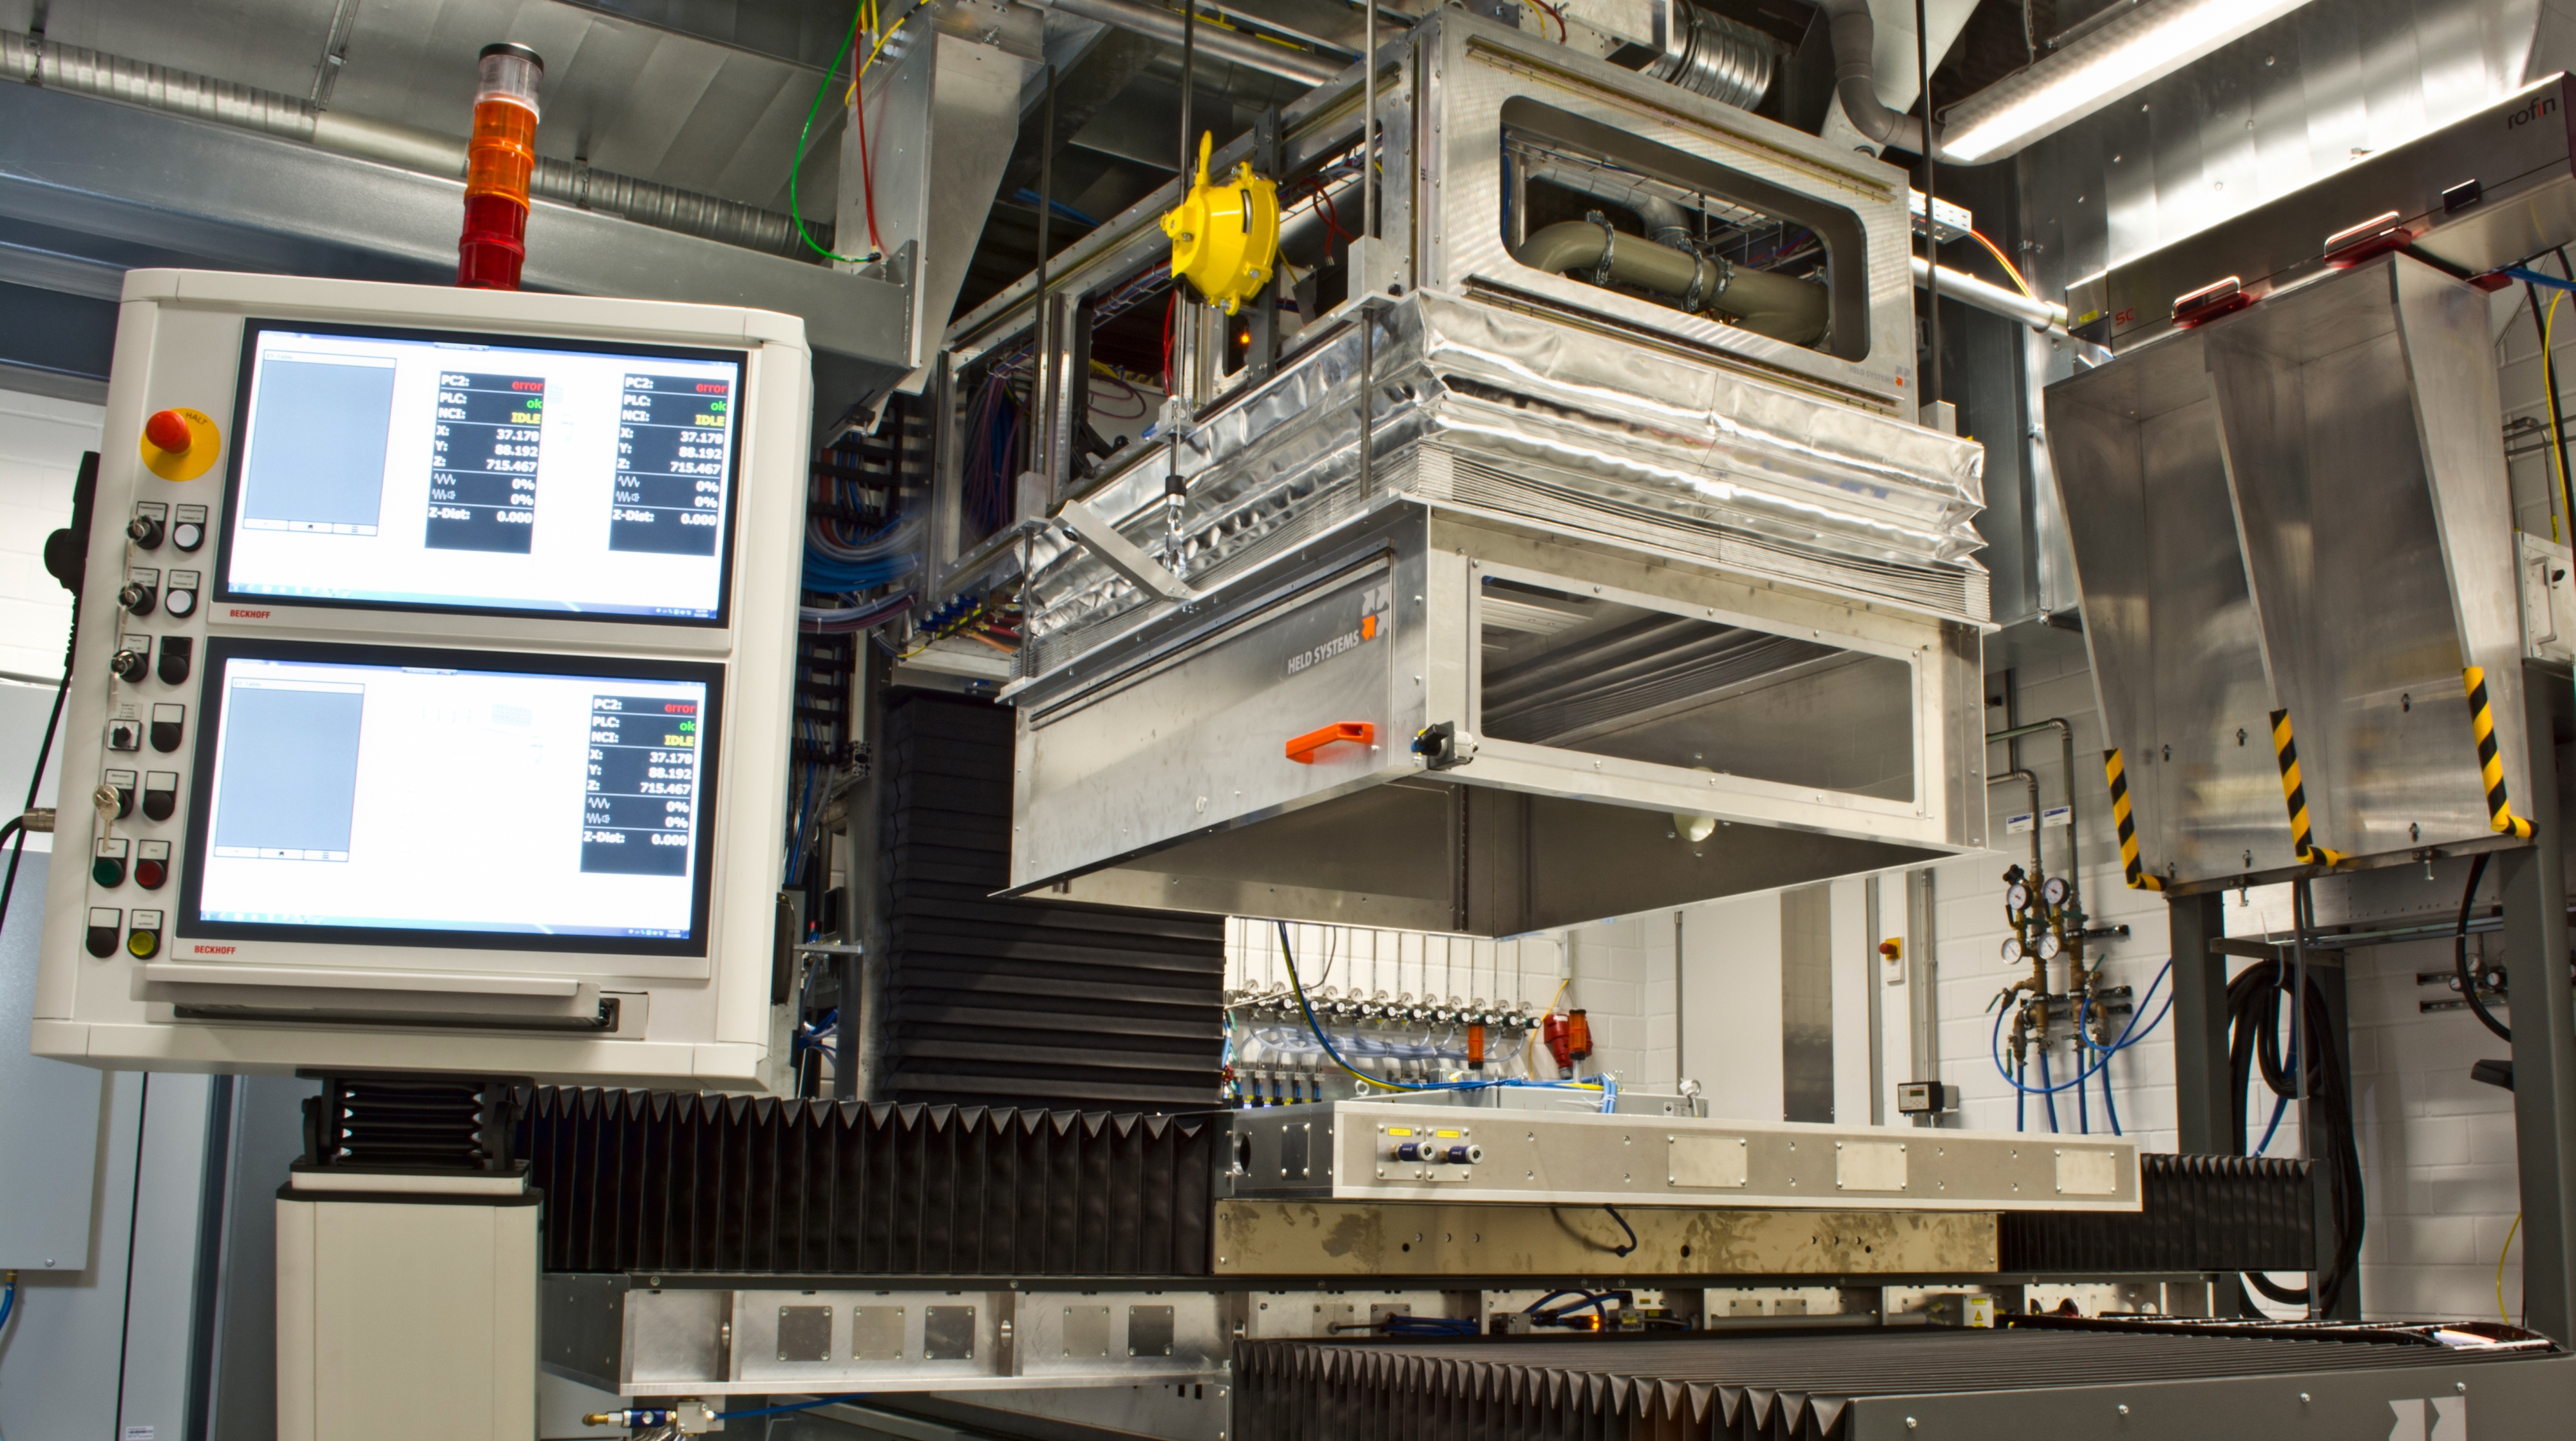 Die Multi-Remote-Anlage (MuReA) des Fraunhofer IWS schweißt, schneidet und strukturiert Bauteile großflächig und produktiv mit Hochleistungslasern. Die entstehenden Partikel und Emissionen werden sicher abgesaugt. CO2-Schneestrahlen reinigen automatisiert die bearbeiteten Oberflächen direkt nach dem Laserprozess.